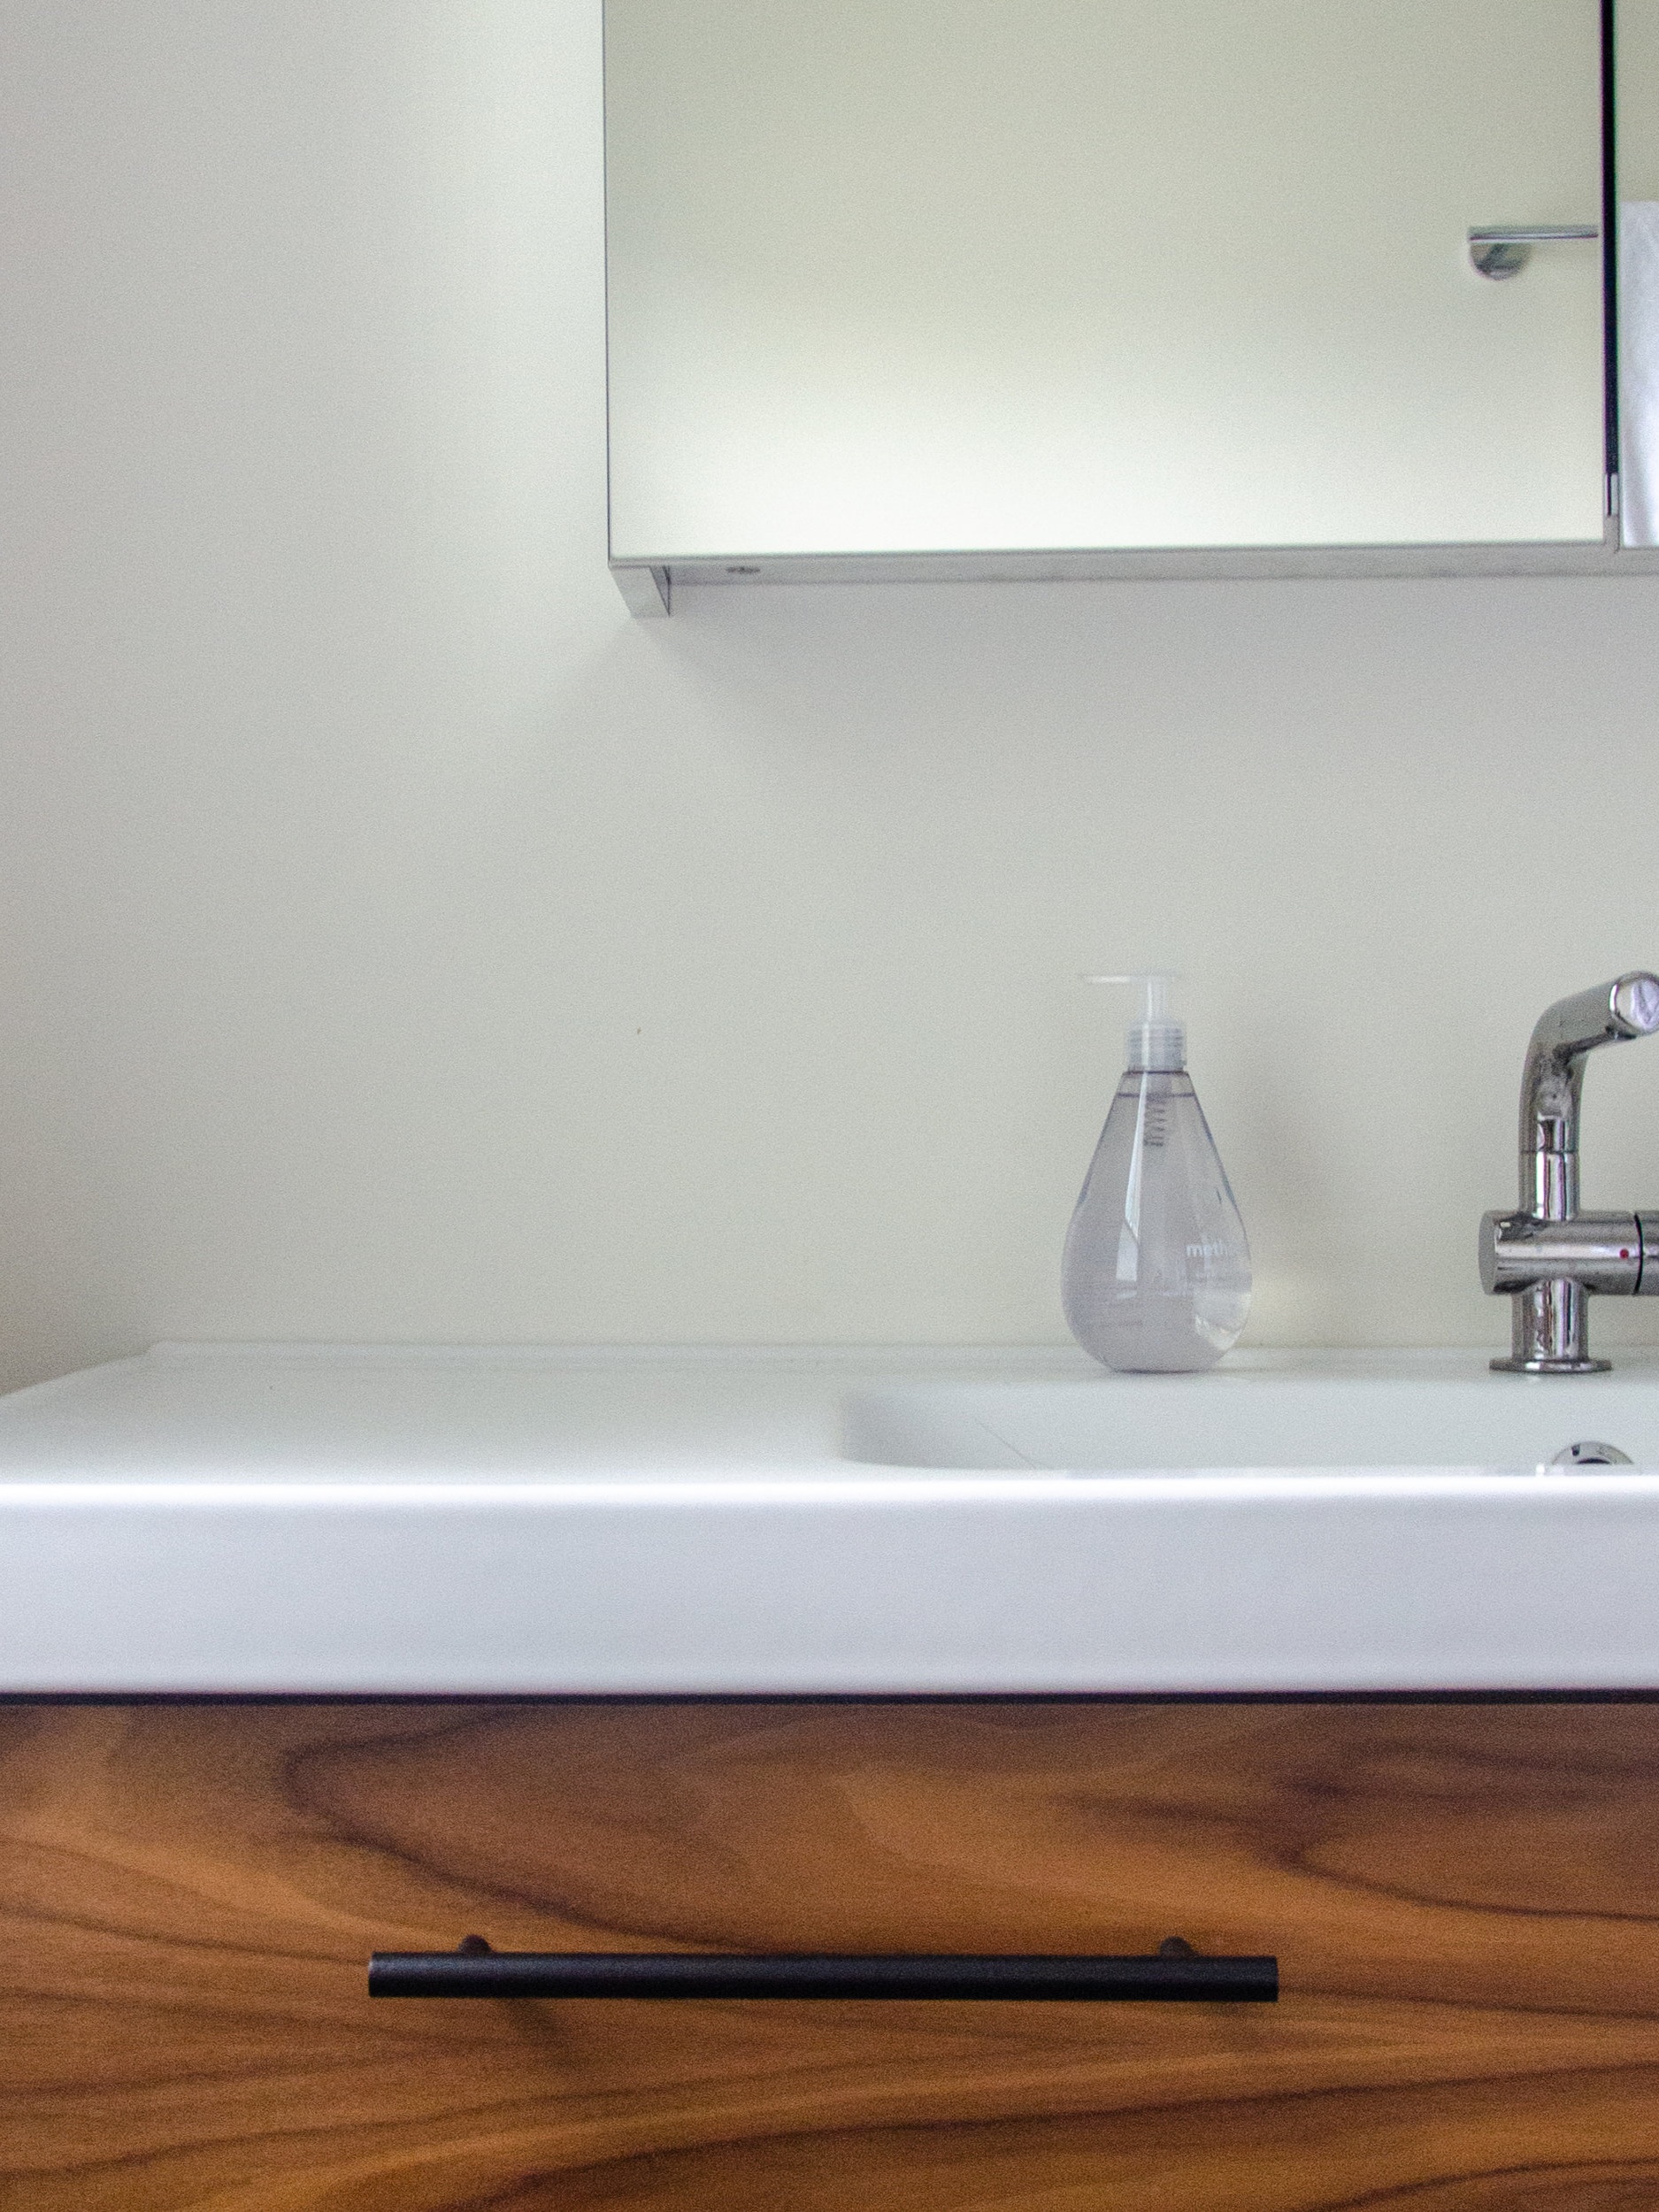 Ikea Morgon Bathroom Vanity And, Double Sink Floating Vanity Ikea